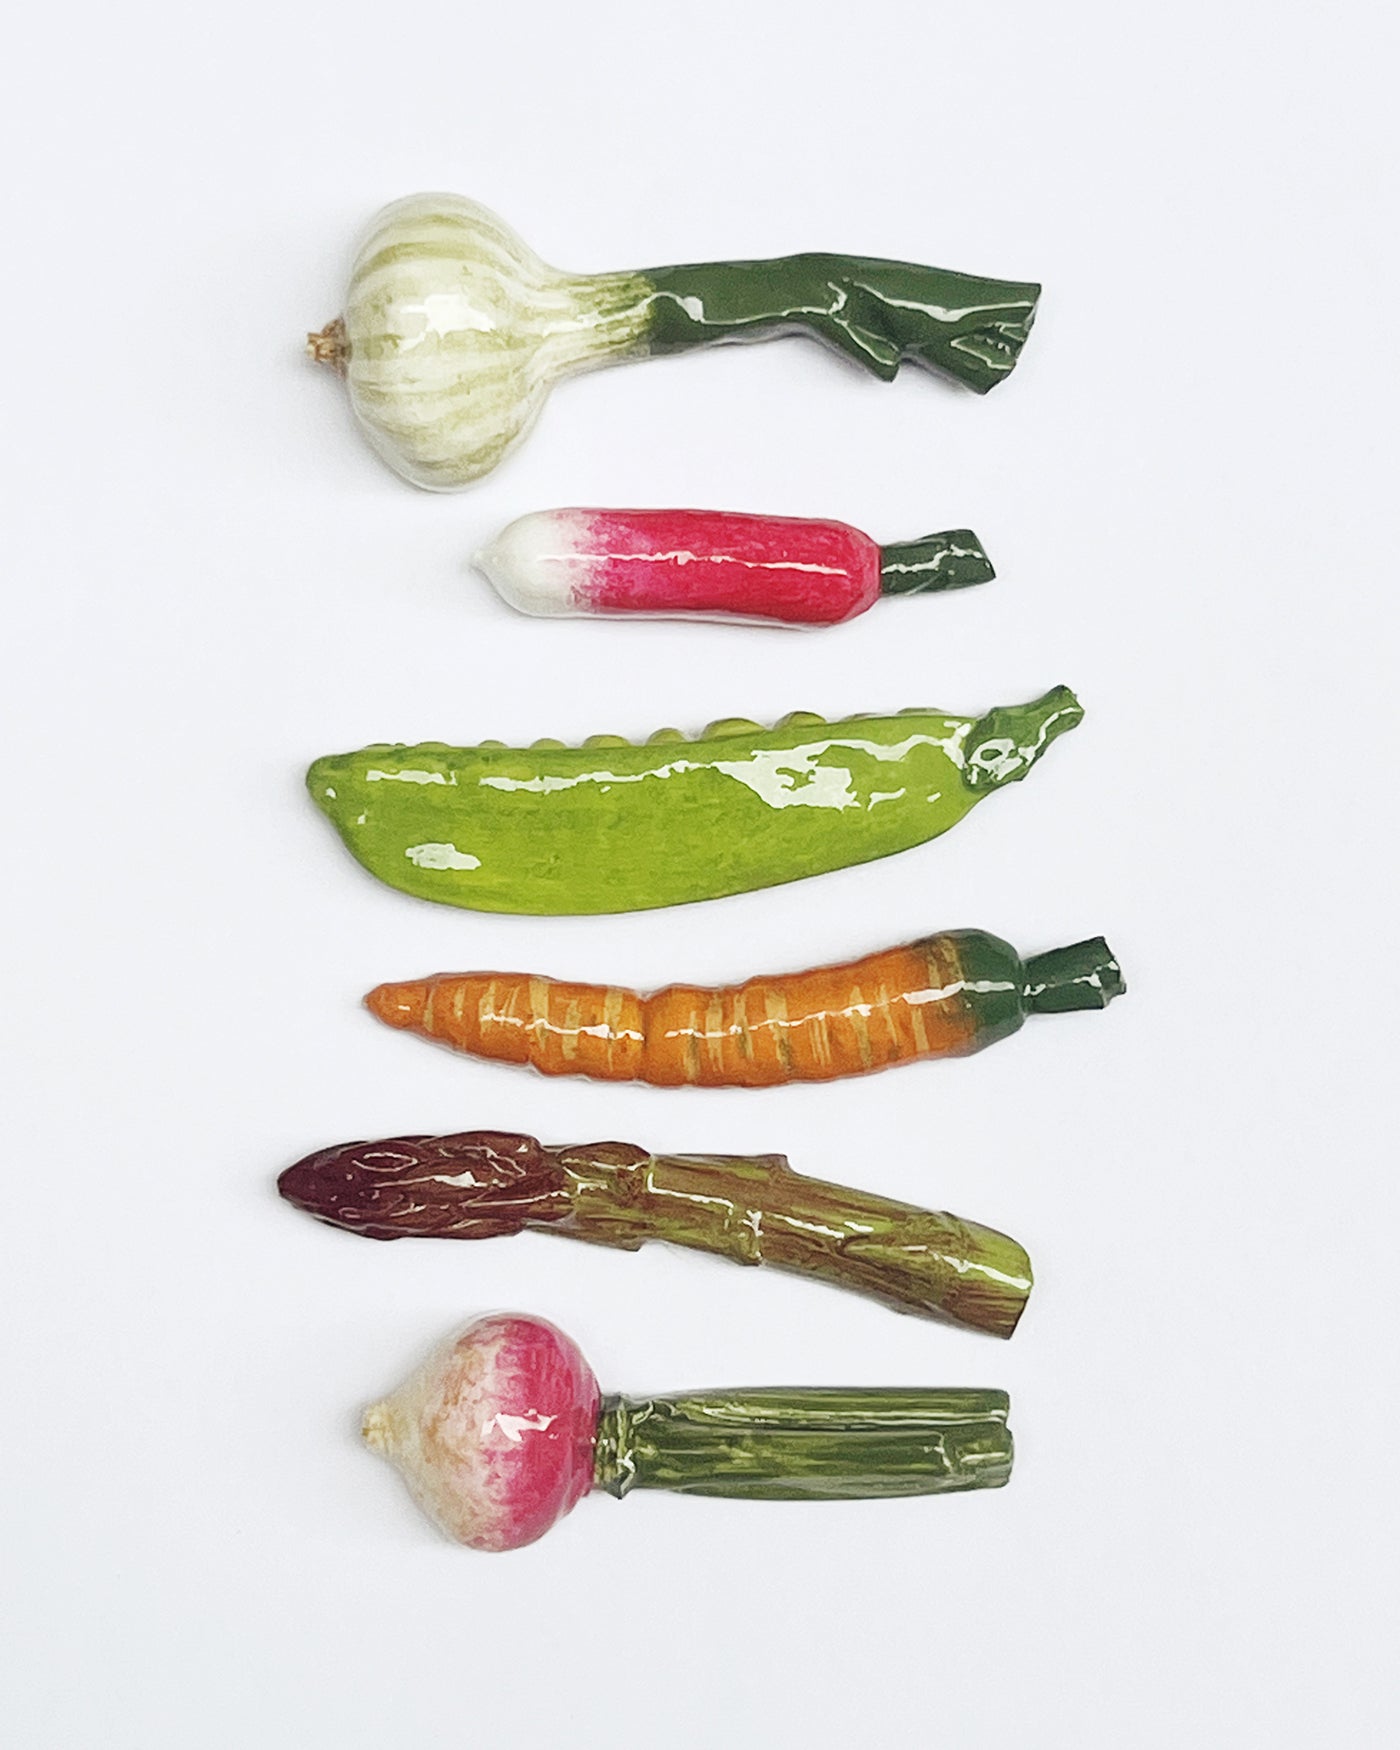 Les 6 porte-couteaux légumes de printemps – La Romaine Editions